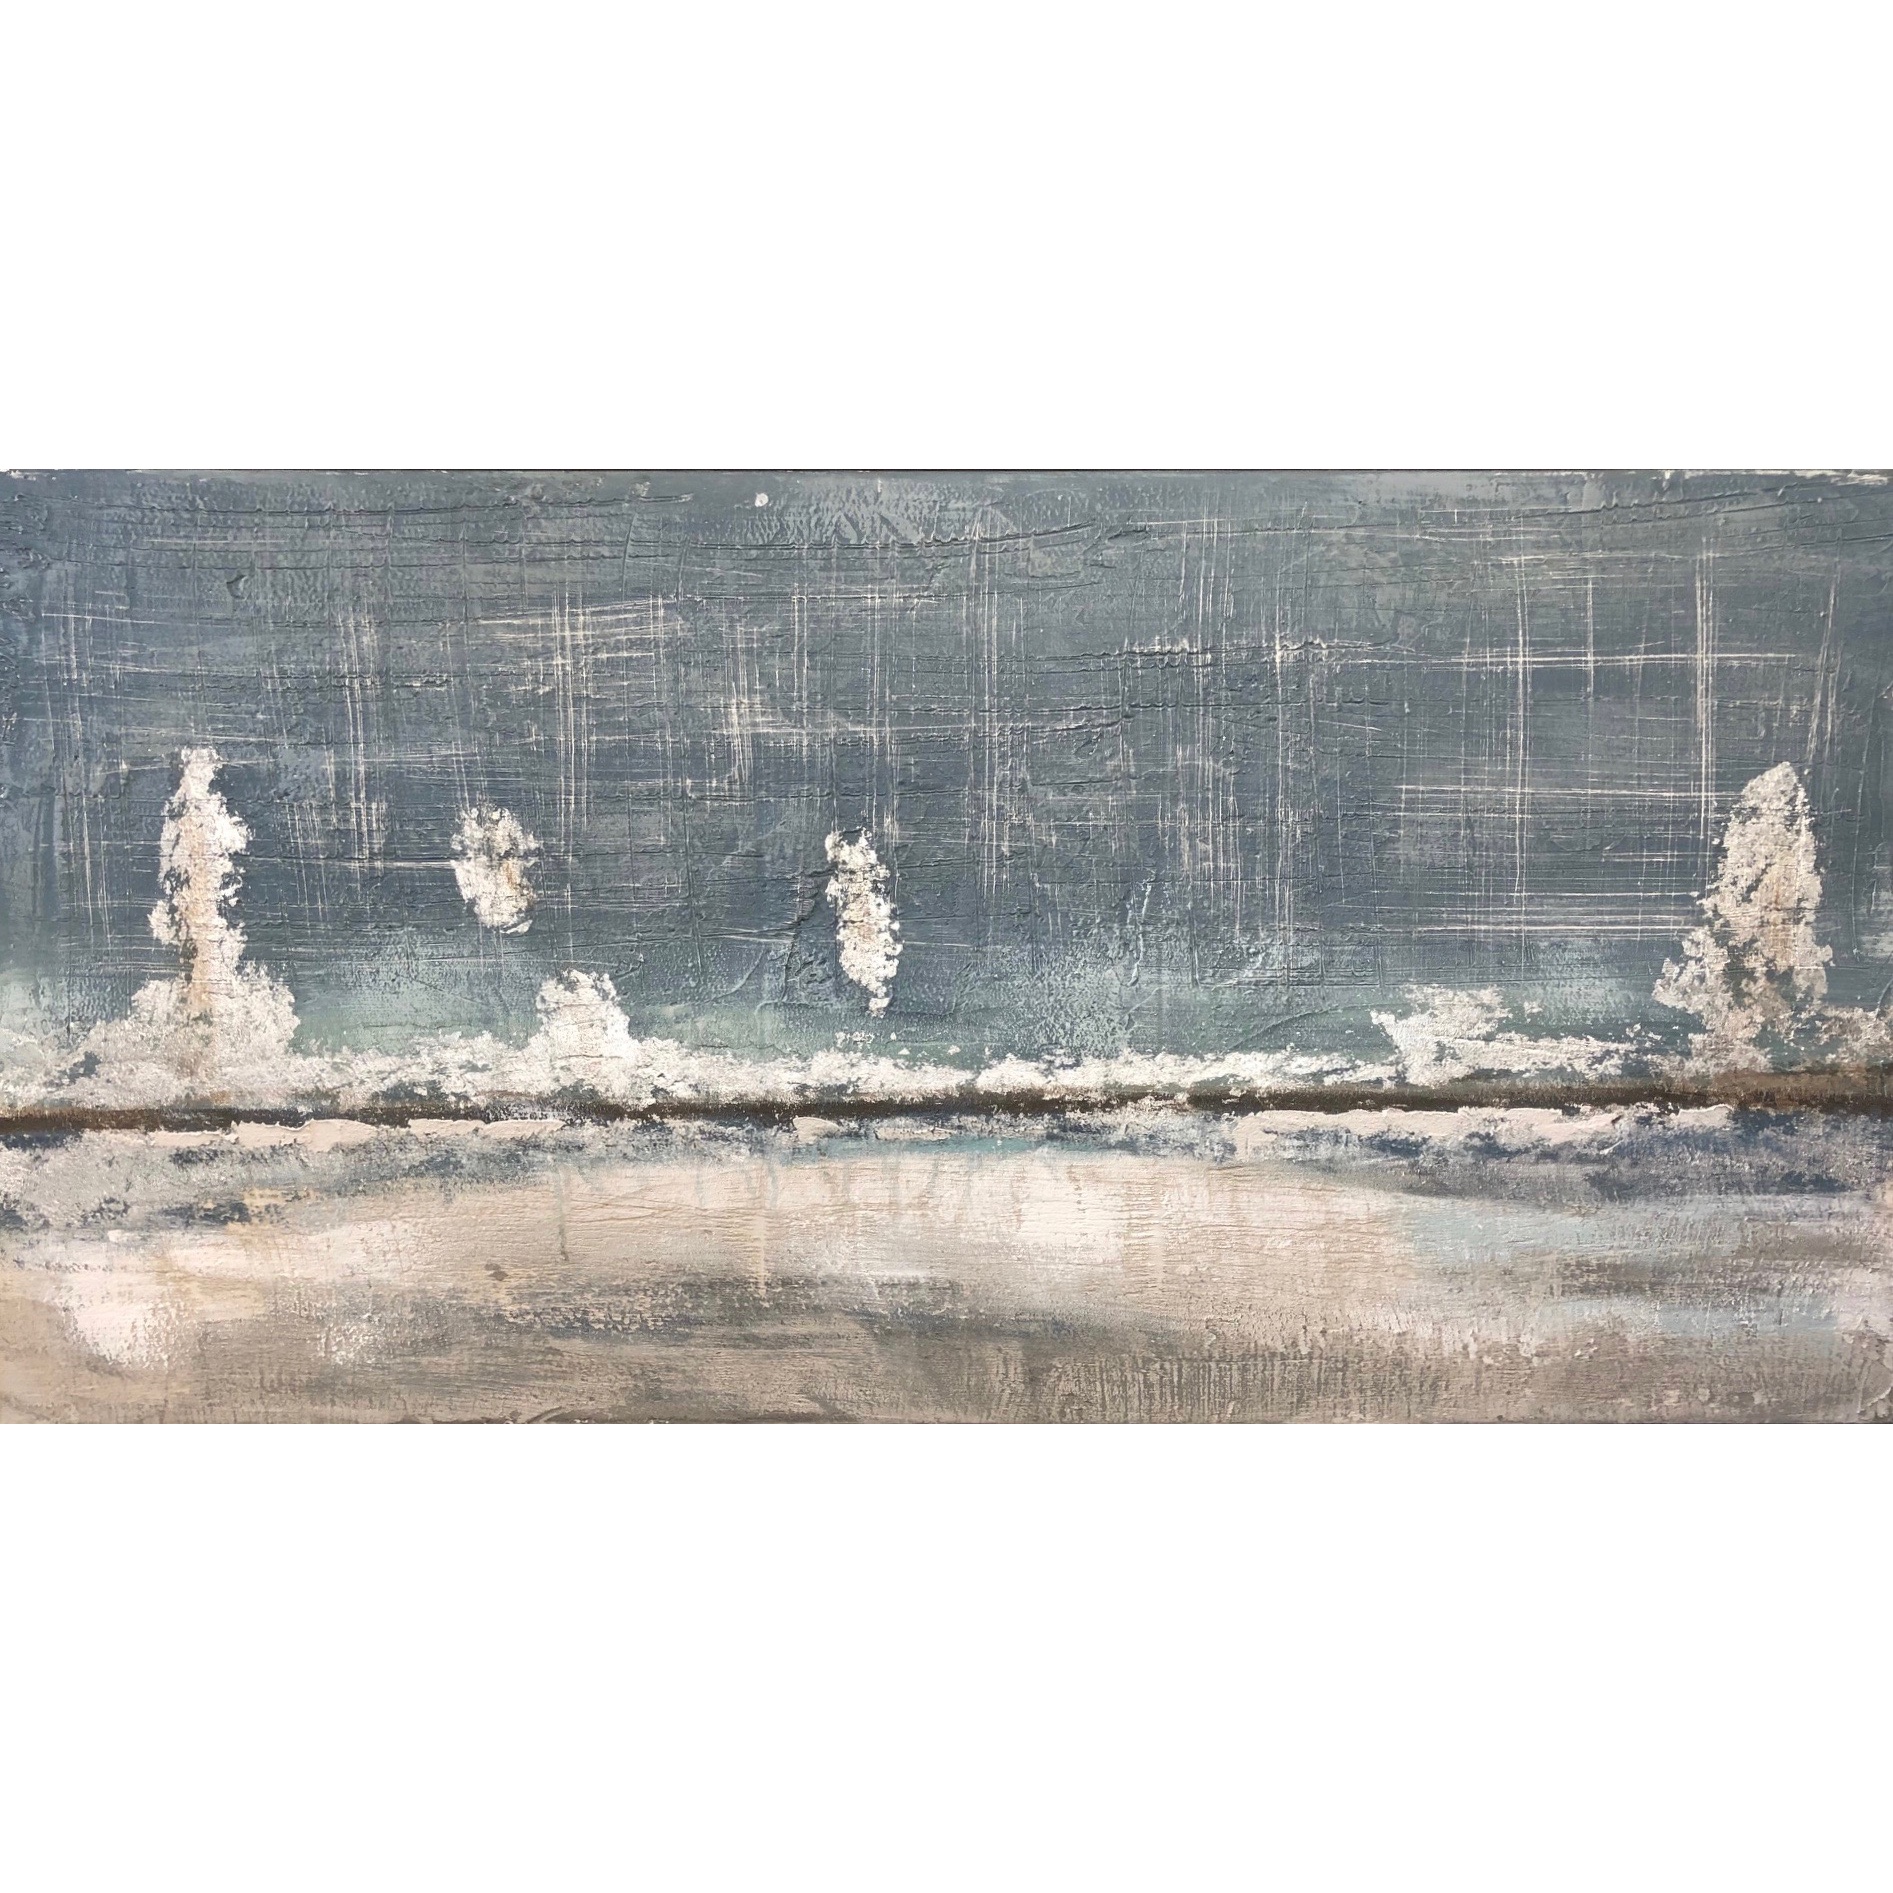 Harnas artikel herberg Schilderij op linnen 'Abstract landschap' Origineel op linnen - 70 x 140 cm